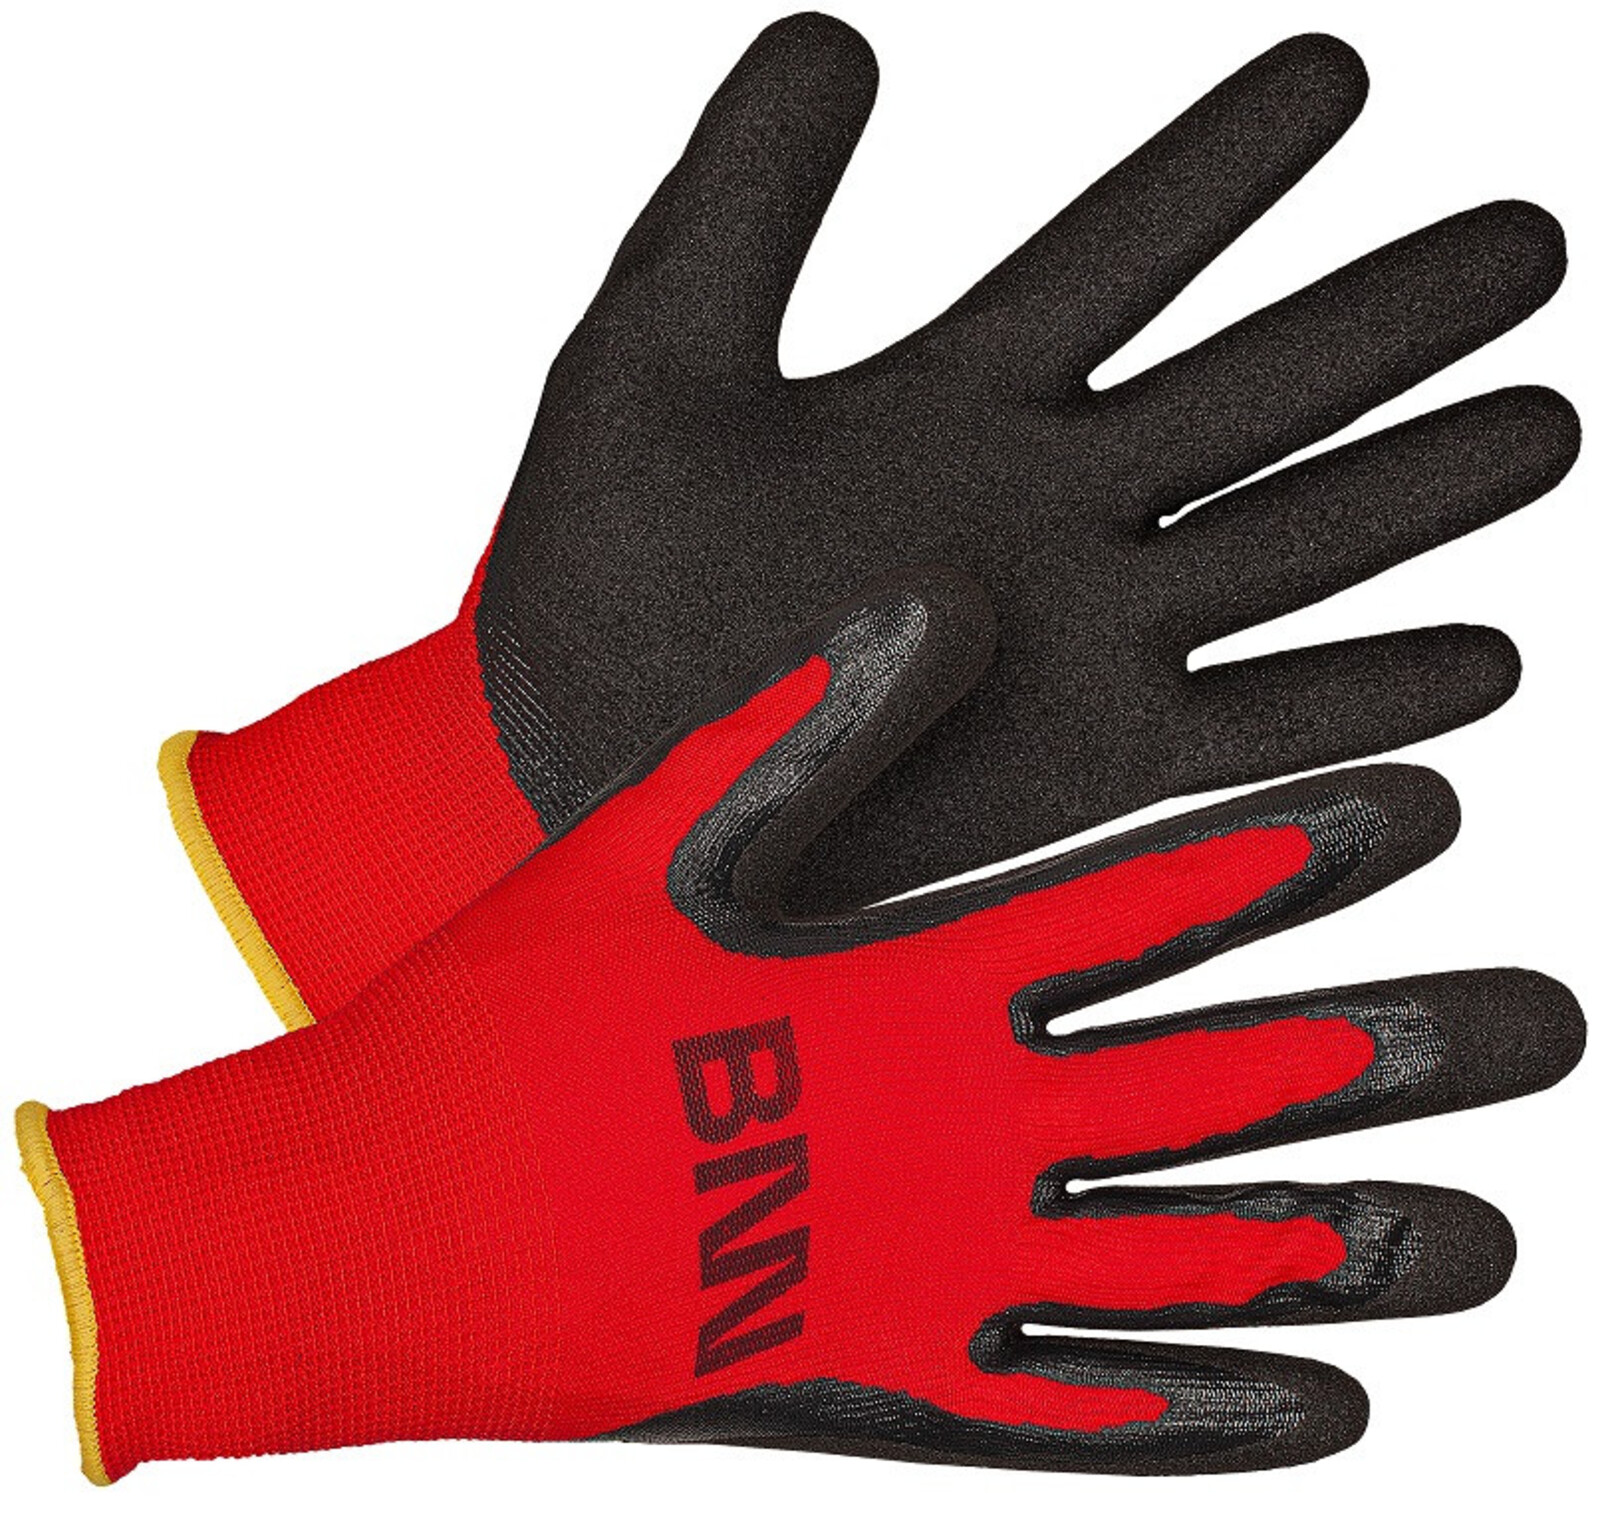 Nitrilové rukavice Bennon Manos - veľkosť: 7/S, farba: čierna/červená